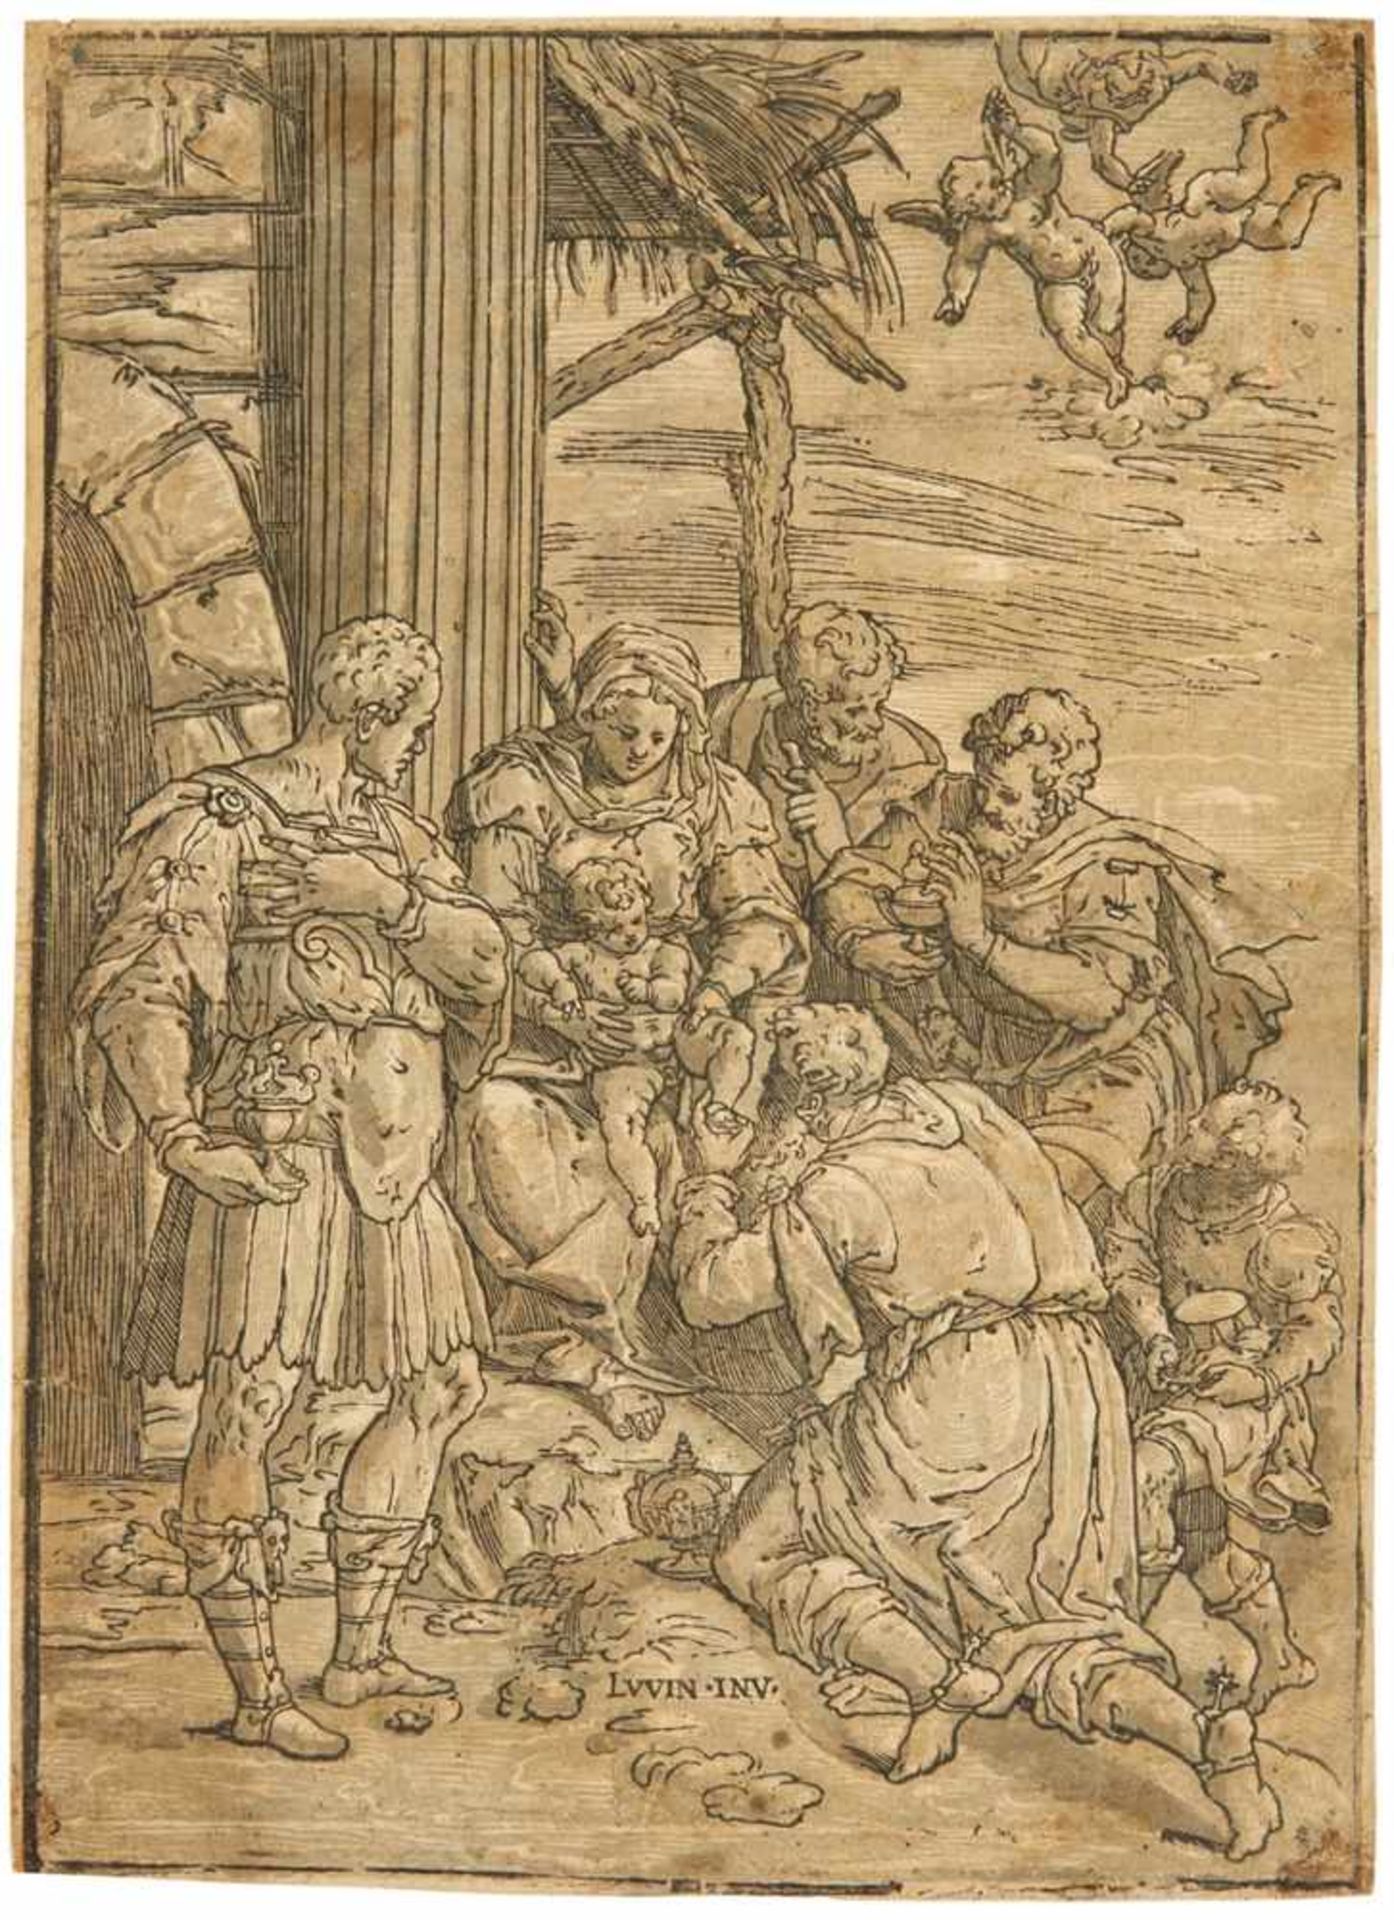 ANDREA ANDREANIMantua 1558/59 - 1629Die Anbetung der Könige. Clair-obscur-Holzschnitt von 3